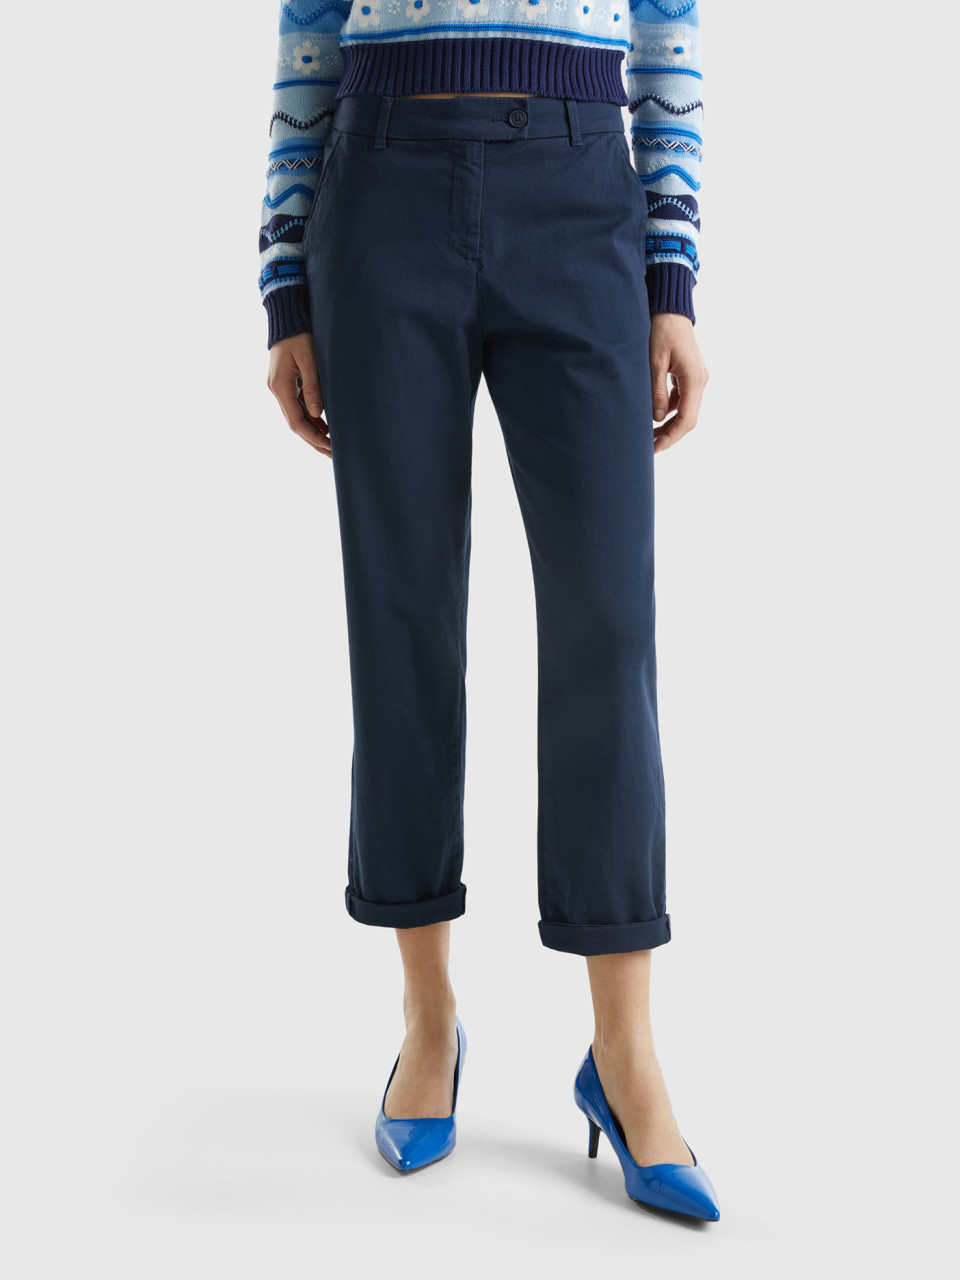 Benetton, Pantalones Chinos De Algodón Elástico, Azul Oscuro, Mujer